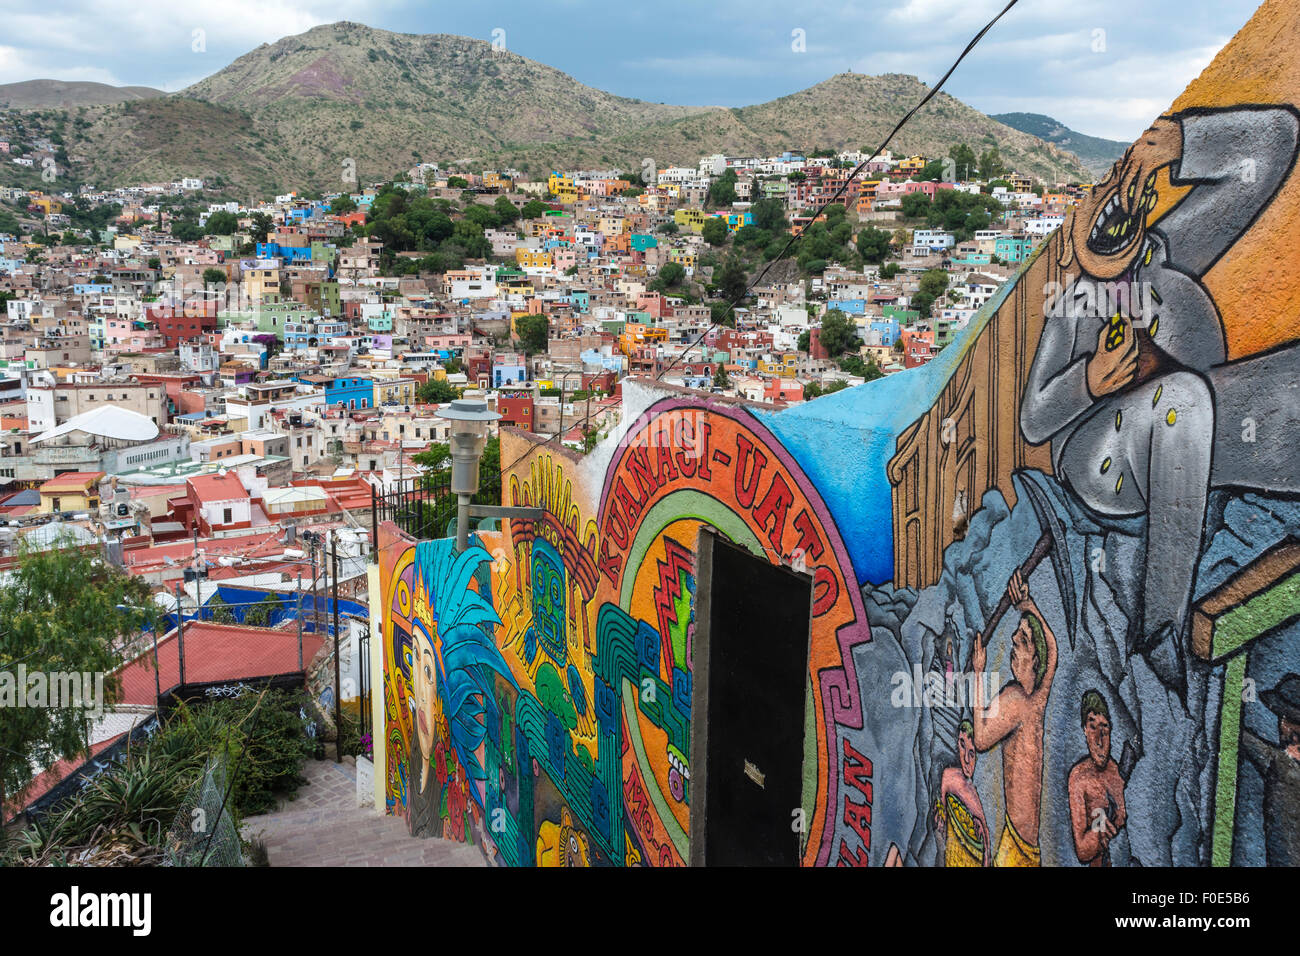 Colorful buildings in Guanajuato, Mexico Stock Photo